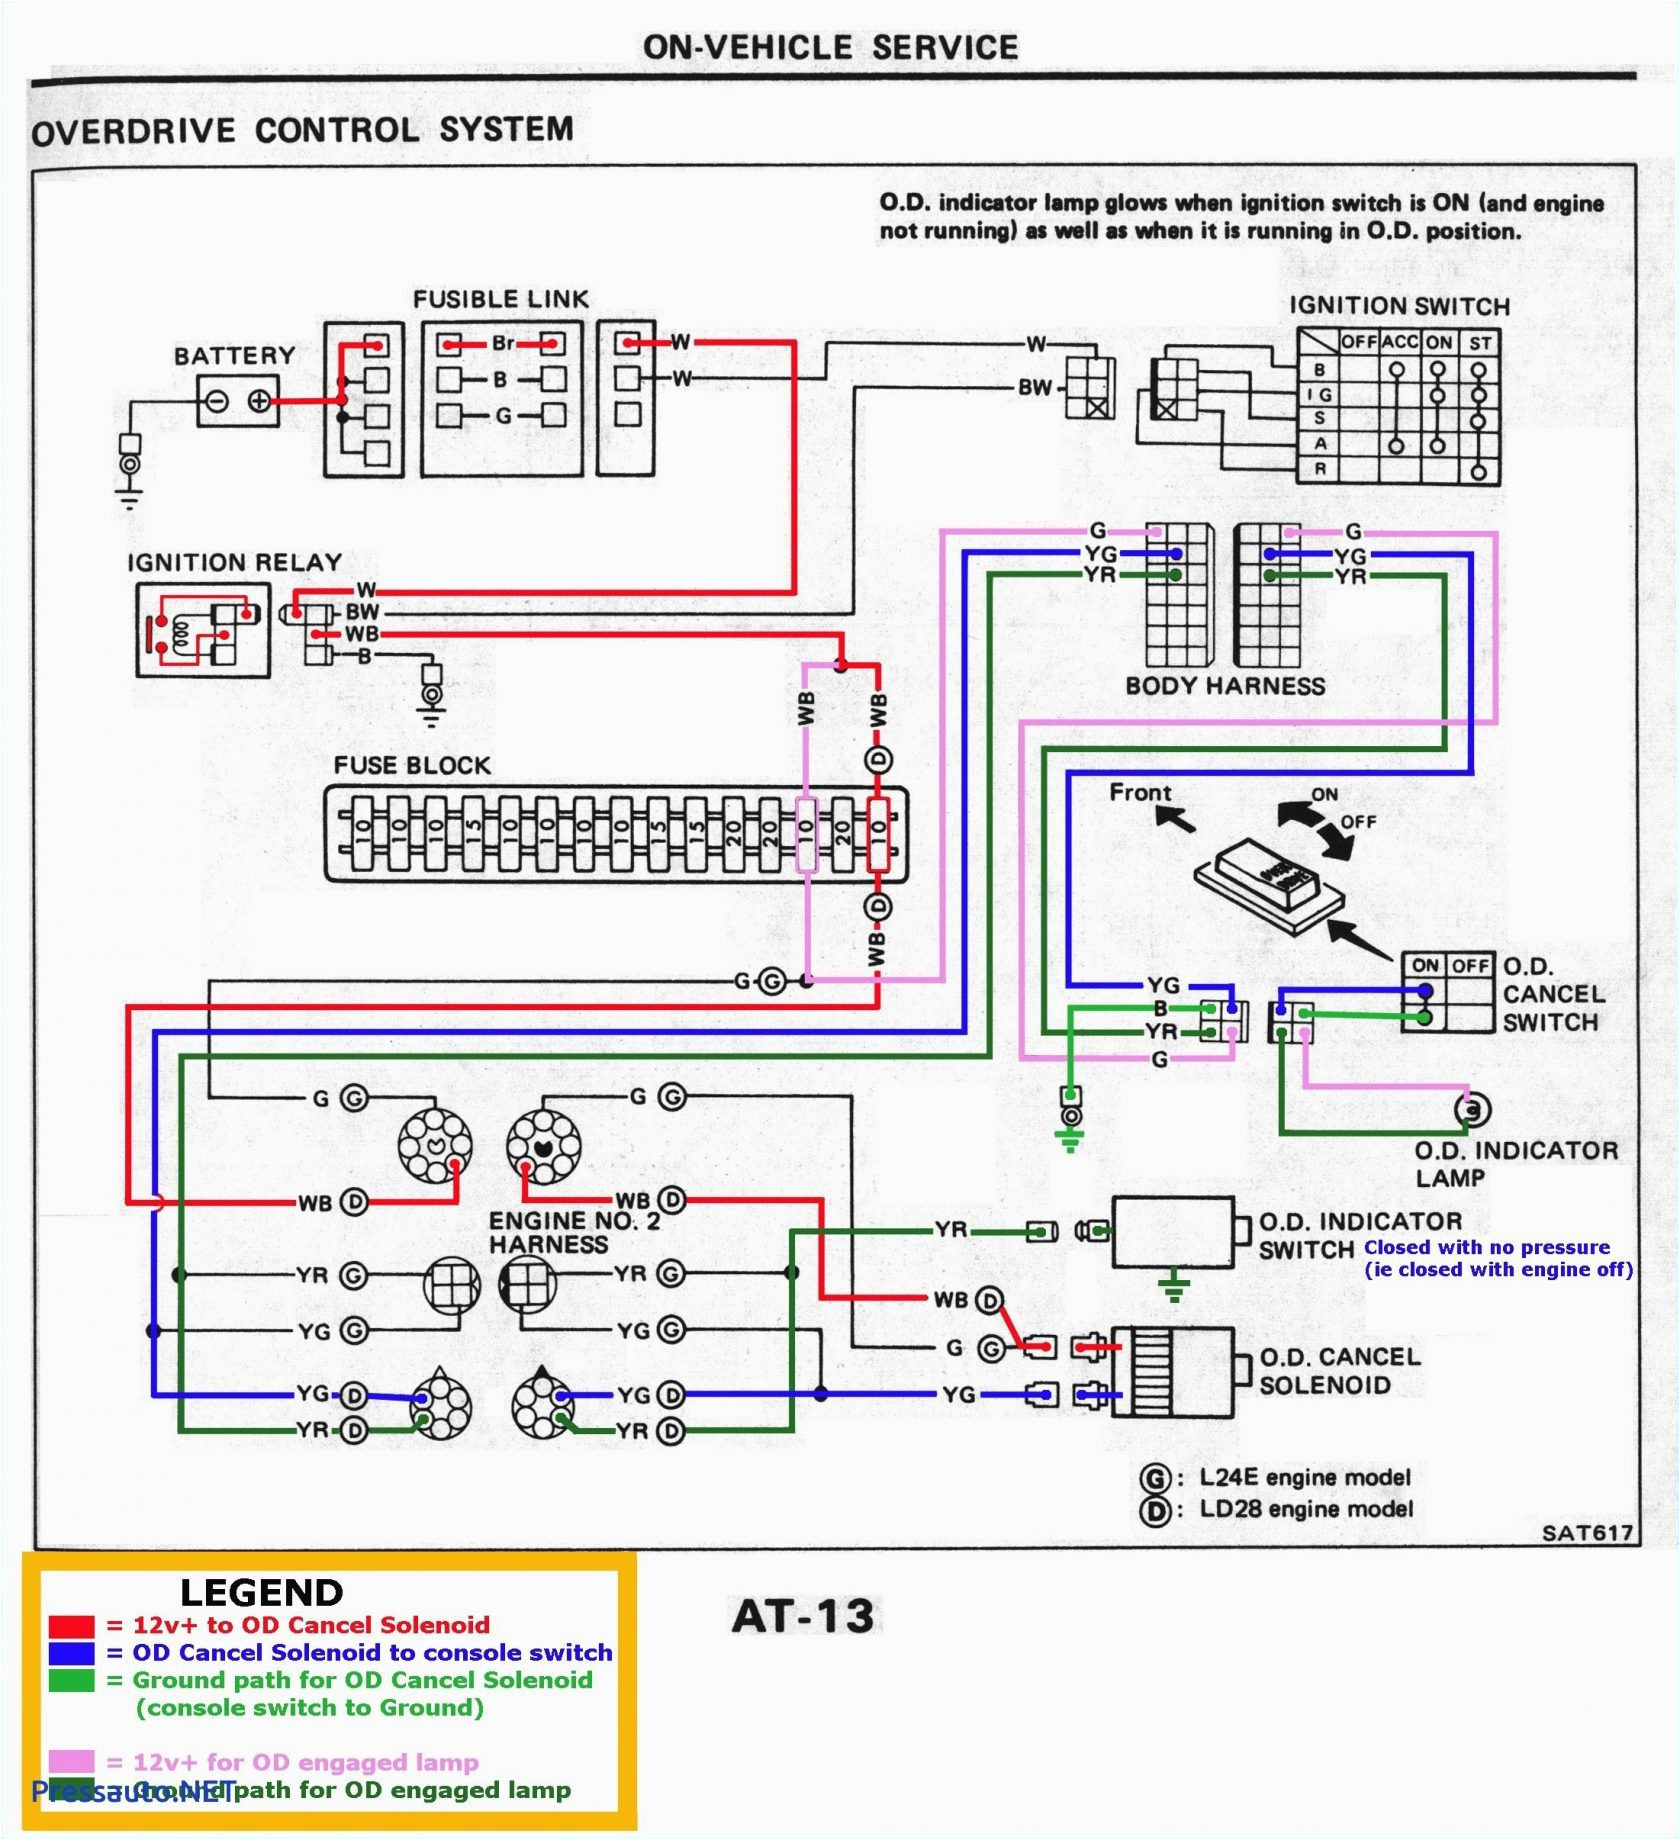 bose car lifier wiring diagram wiring diagrams active bose car audio amplifier wiring diagram bose car amplifier wiring diagram